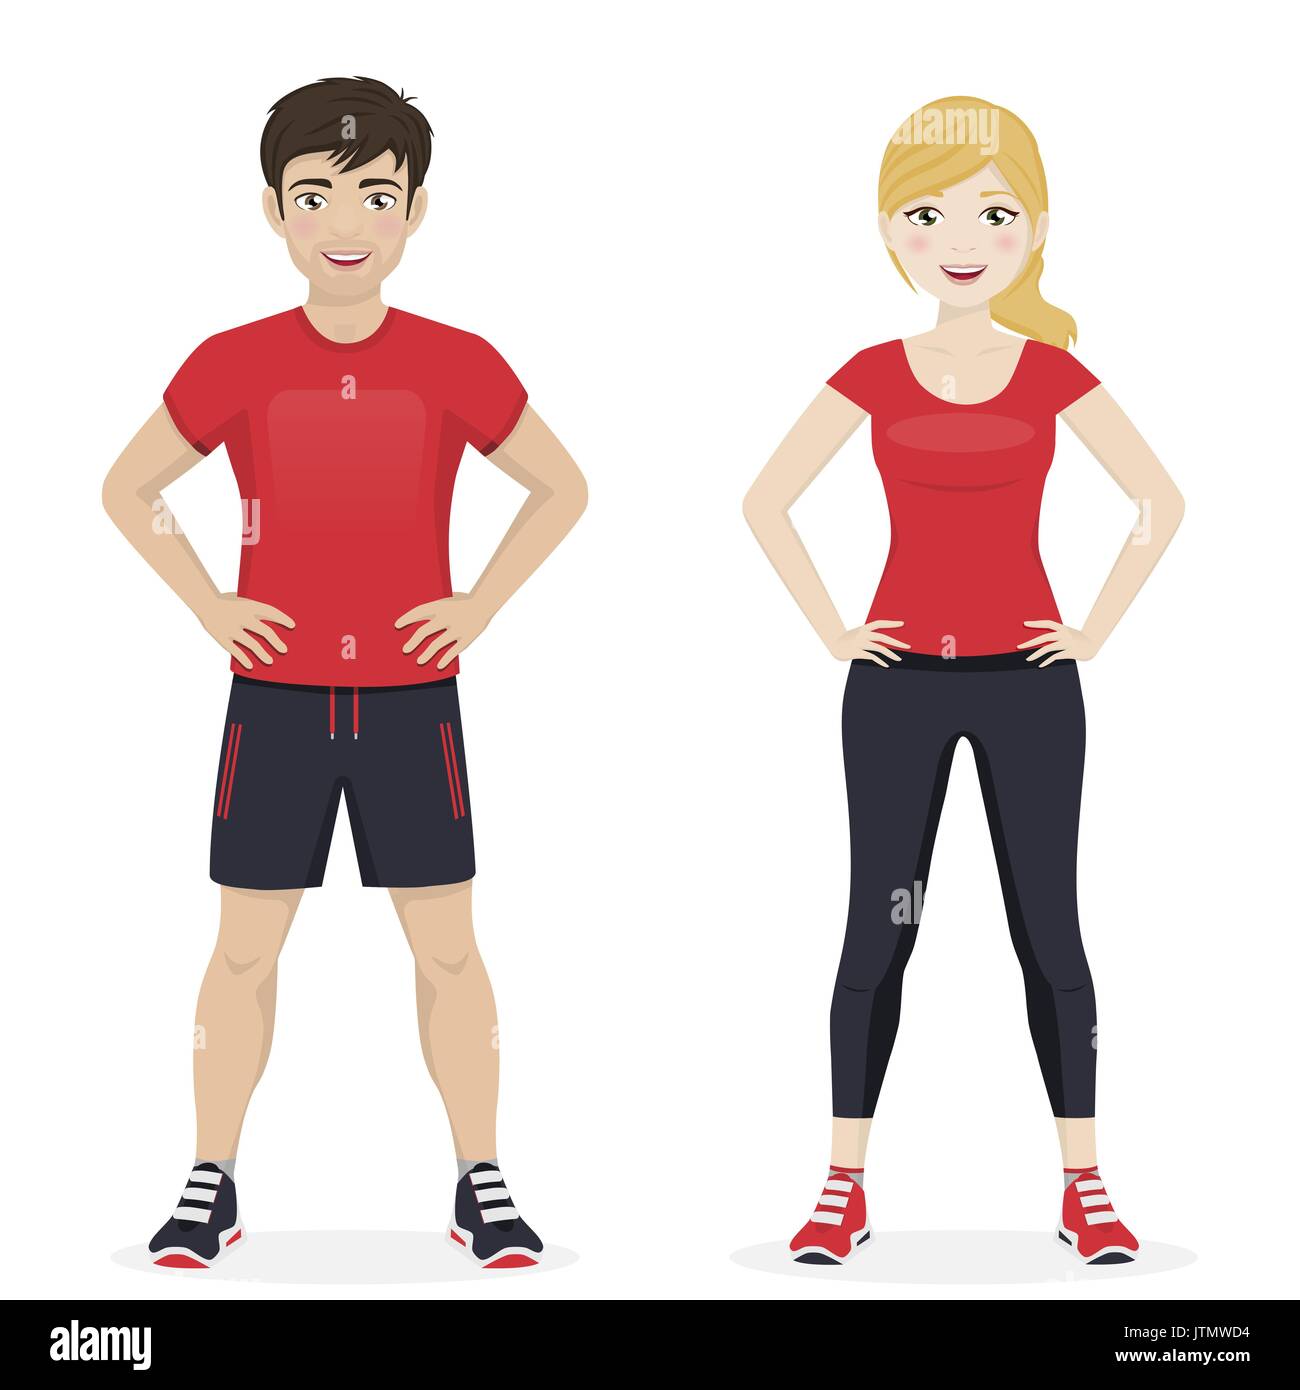 Un hombre y una mujer jugando el deporte con ropa deportiva roja